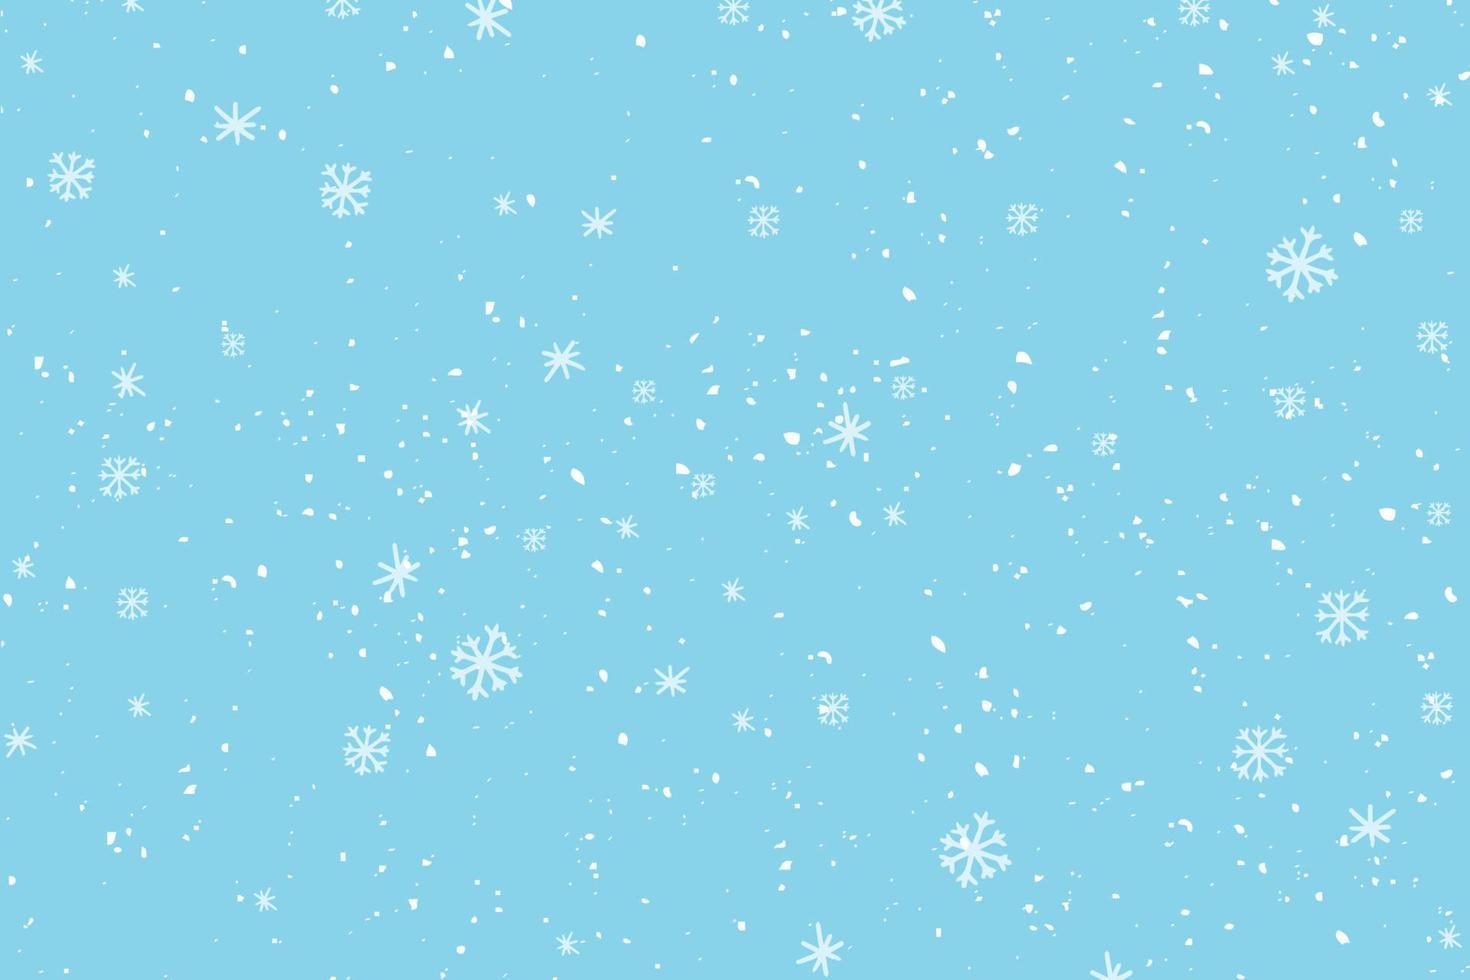 queda de neve do inverno e flocos de neve sobre fundo azul claro. mão desenhada neve padrão. doodle fundo de céu frio de inverno vetor